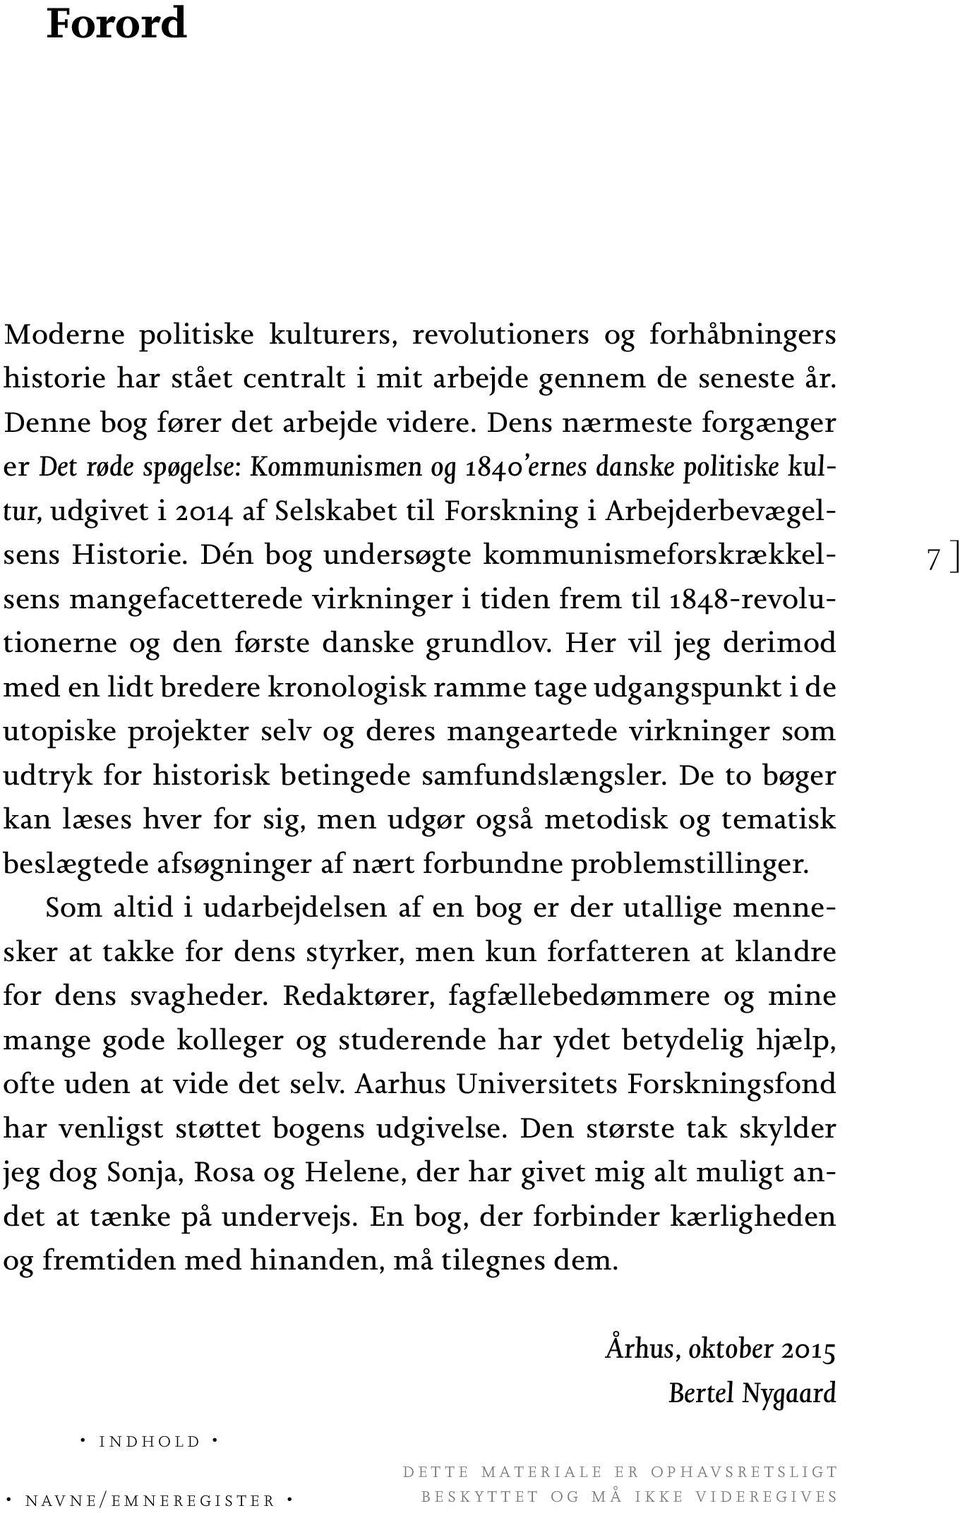 Dén bog undersøgte kommunismeforskrækkelsens mangefacetterede virkninger i tiden frem til 1848-revolutionerne og den første danske grundlov.